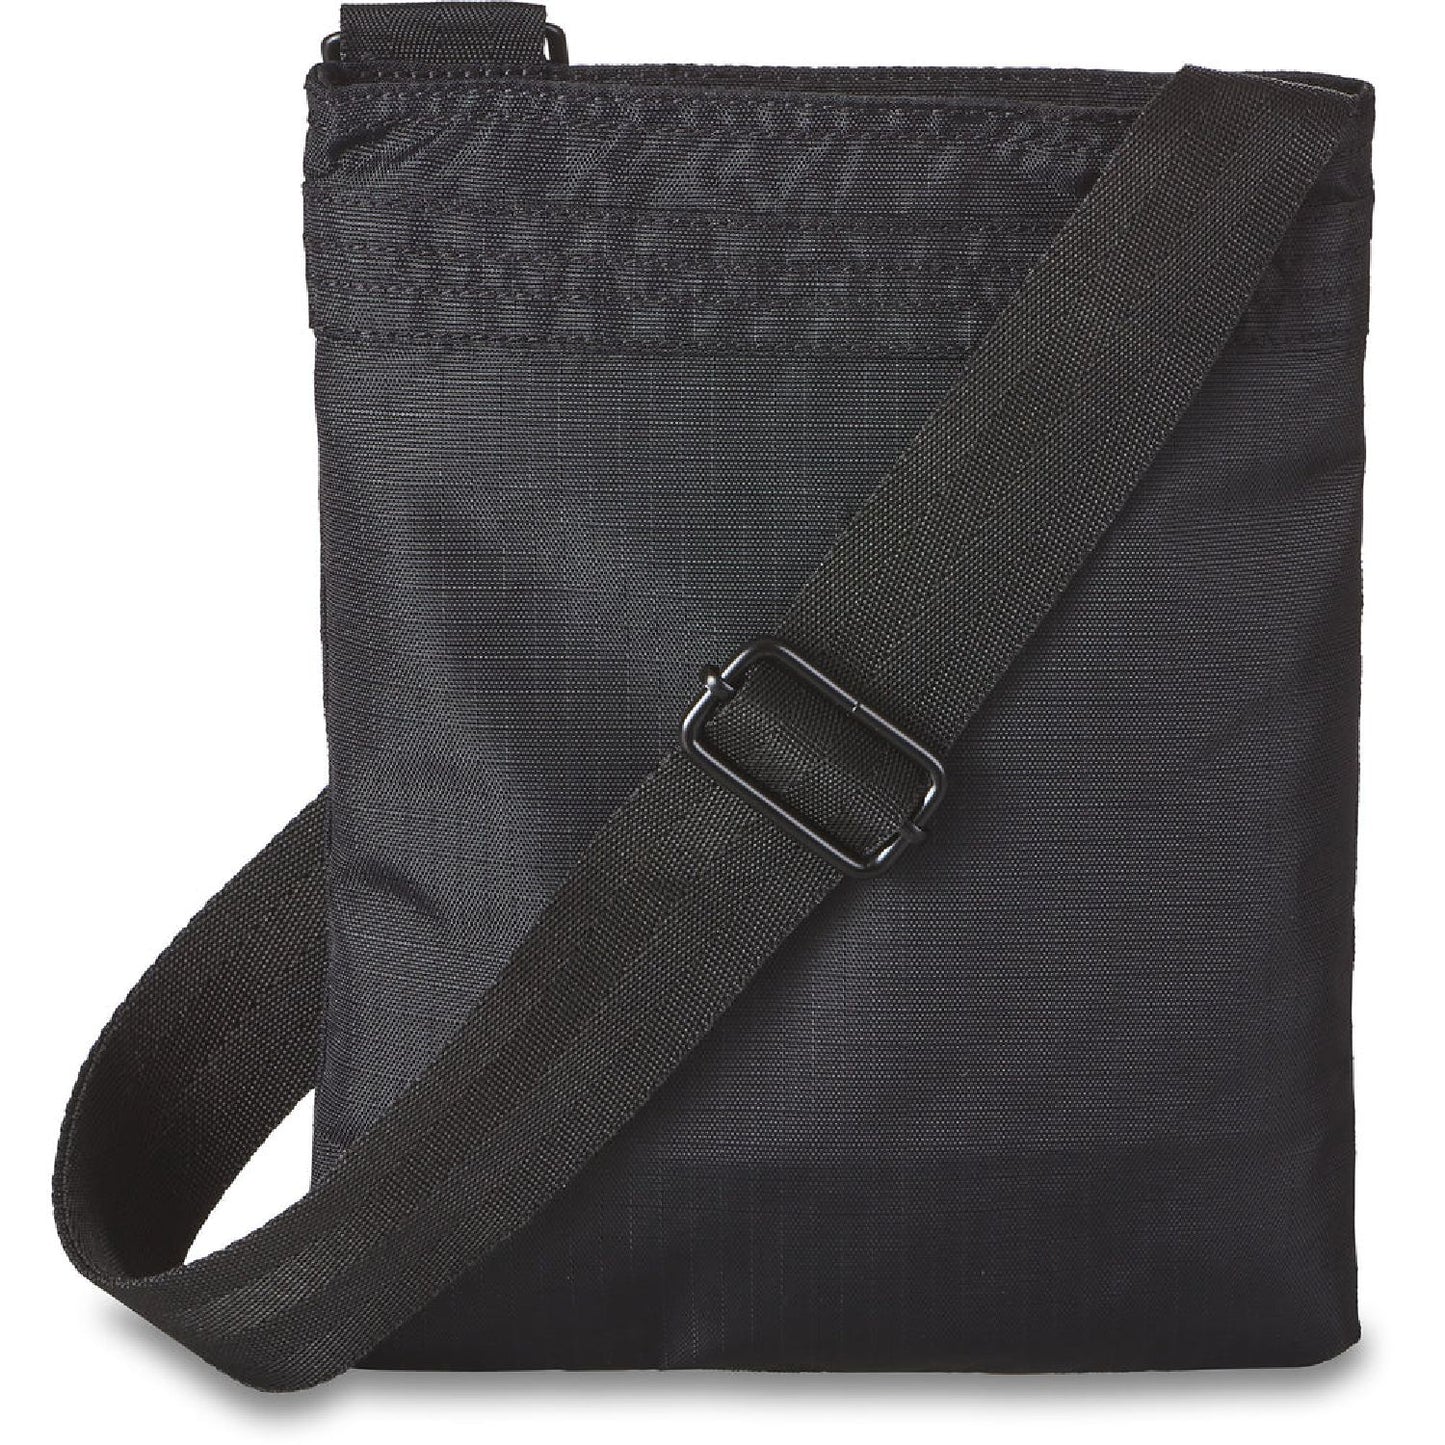 Dakine Jive Bag Black Ripstop OS - Dakine Bags & Packs